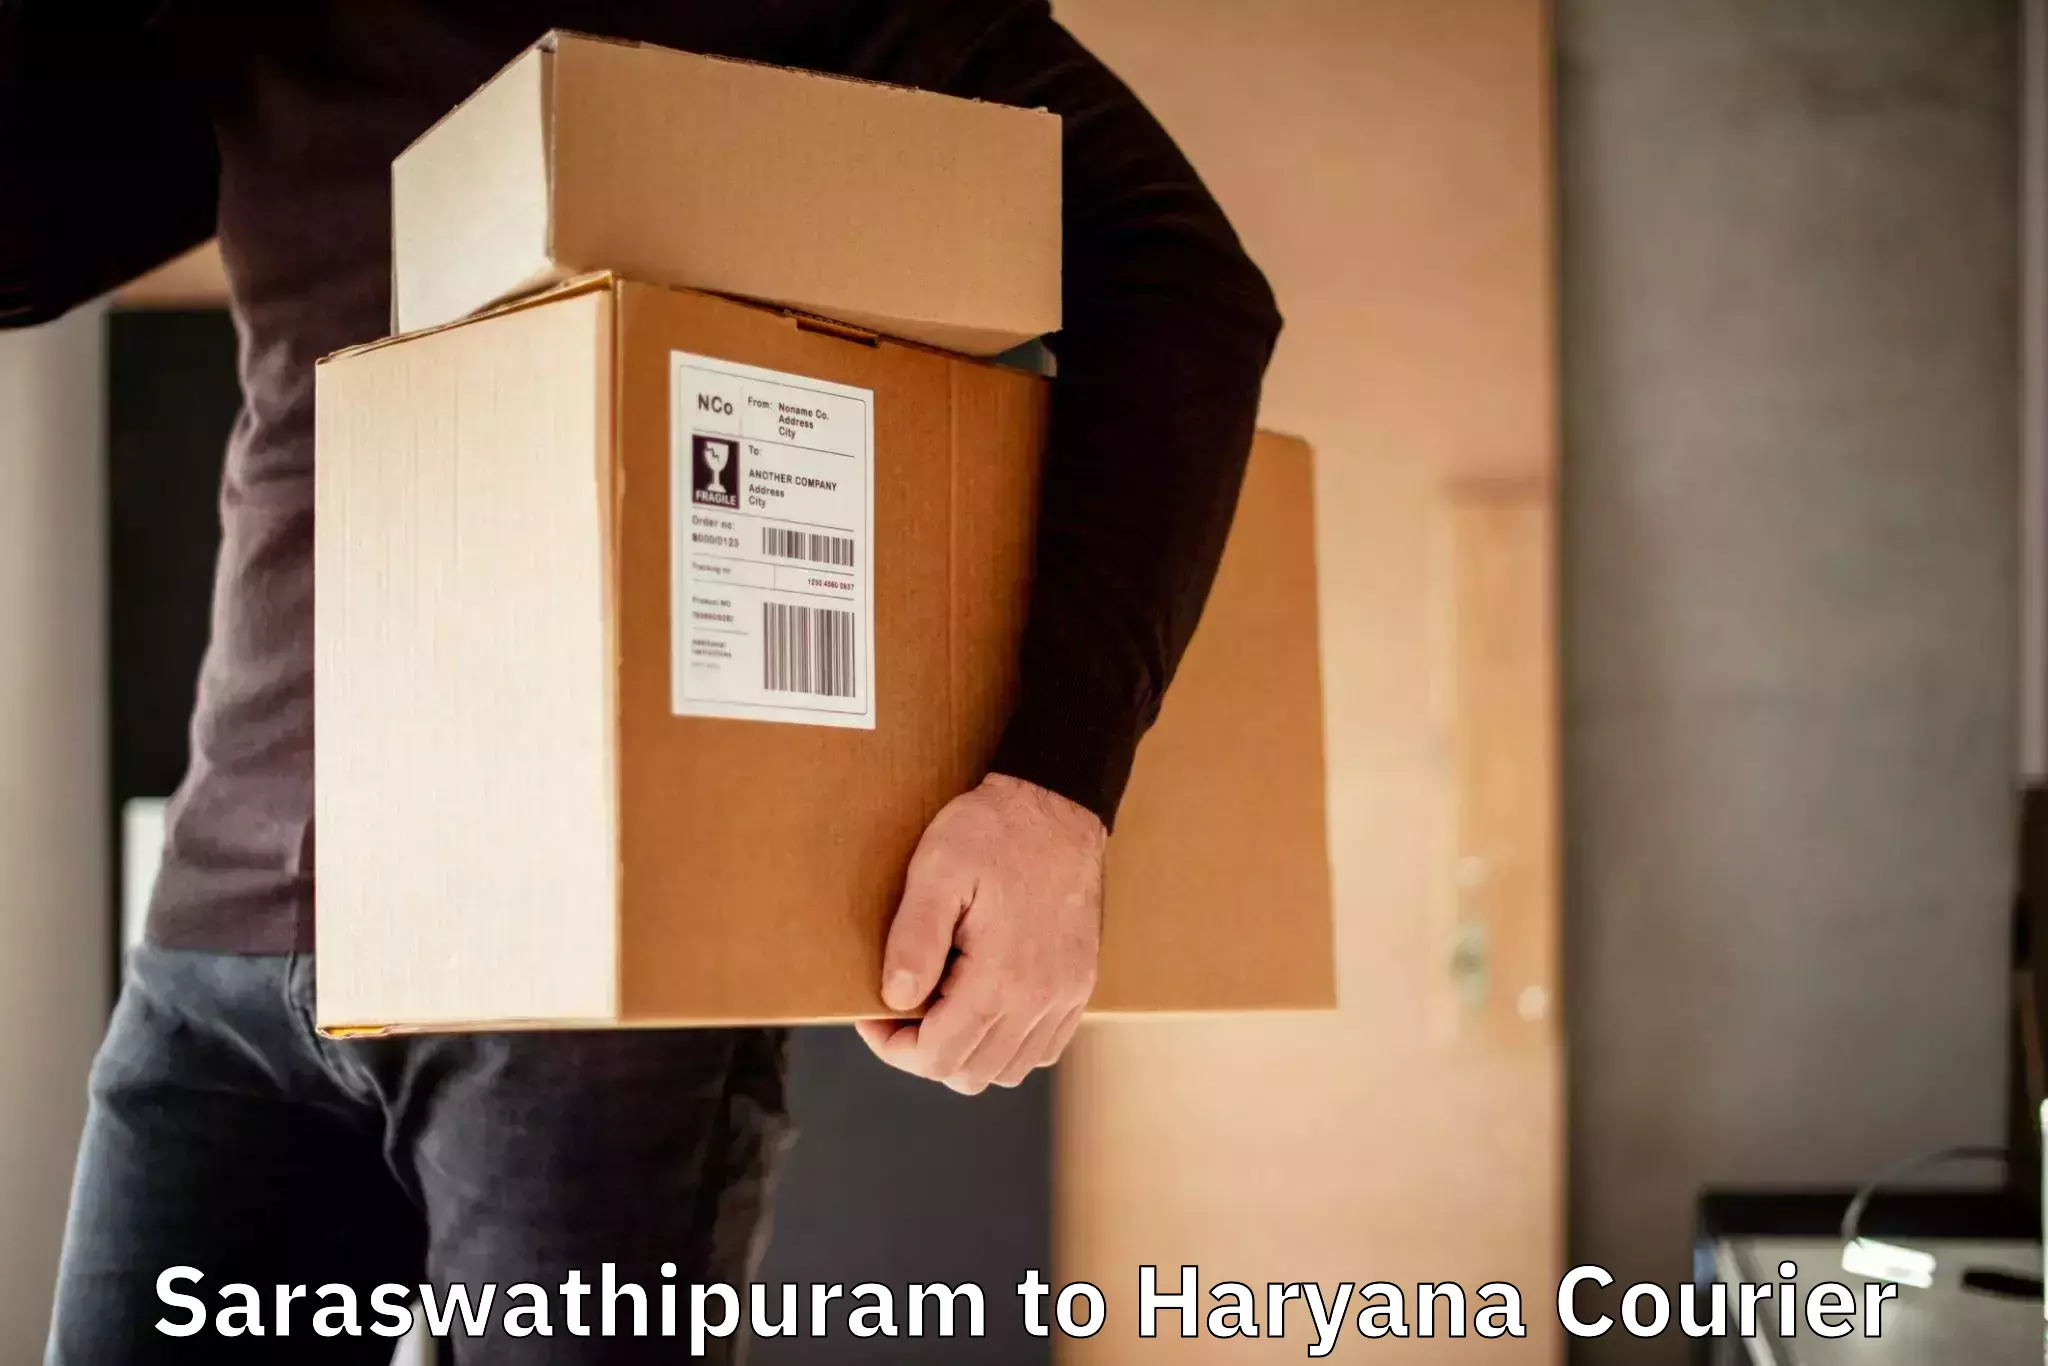 Professional courier handling Saraswathipuram to Barwala